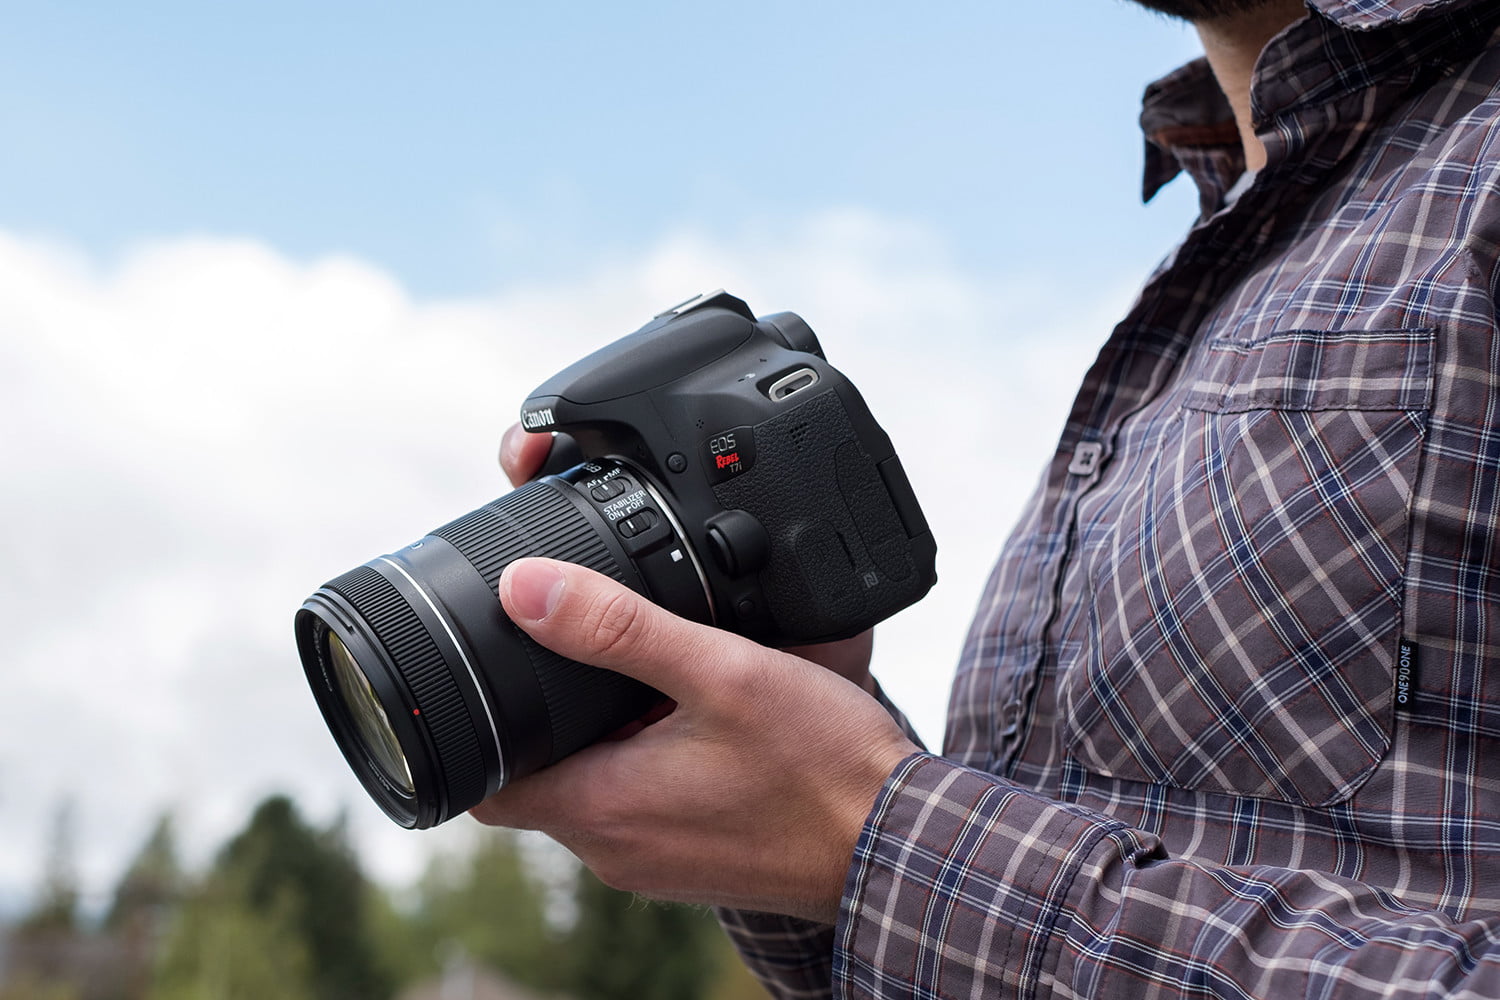 Murciélago contar repetir Las mejores cámaras DSLR para fotógrafos profesionales y aficionados |  Digital Trends Español